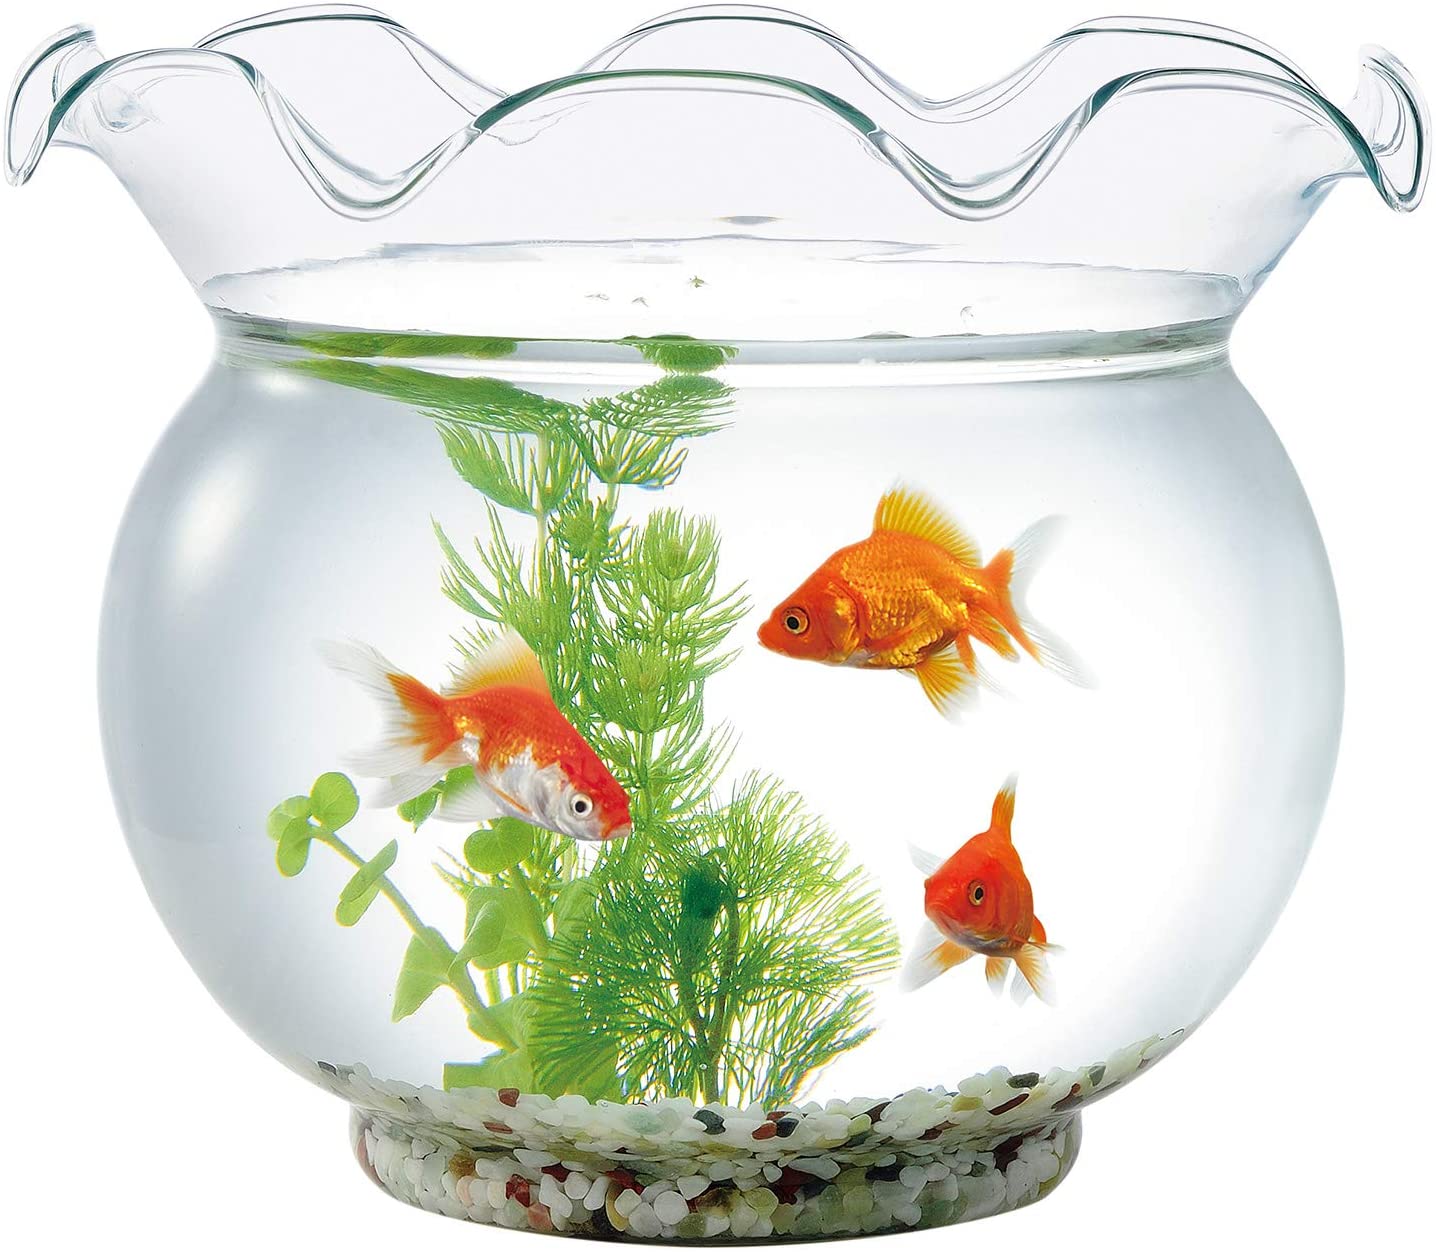 きんぎょ鉢 ガラス製金魚鉢 ガラス シンプル 小さい魚 きんぎょ メダカ 青 水槽 金魚すくいの金魚 おしゃれ 鉢 清涼感 めだか 金魚鉢 金魚